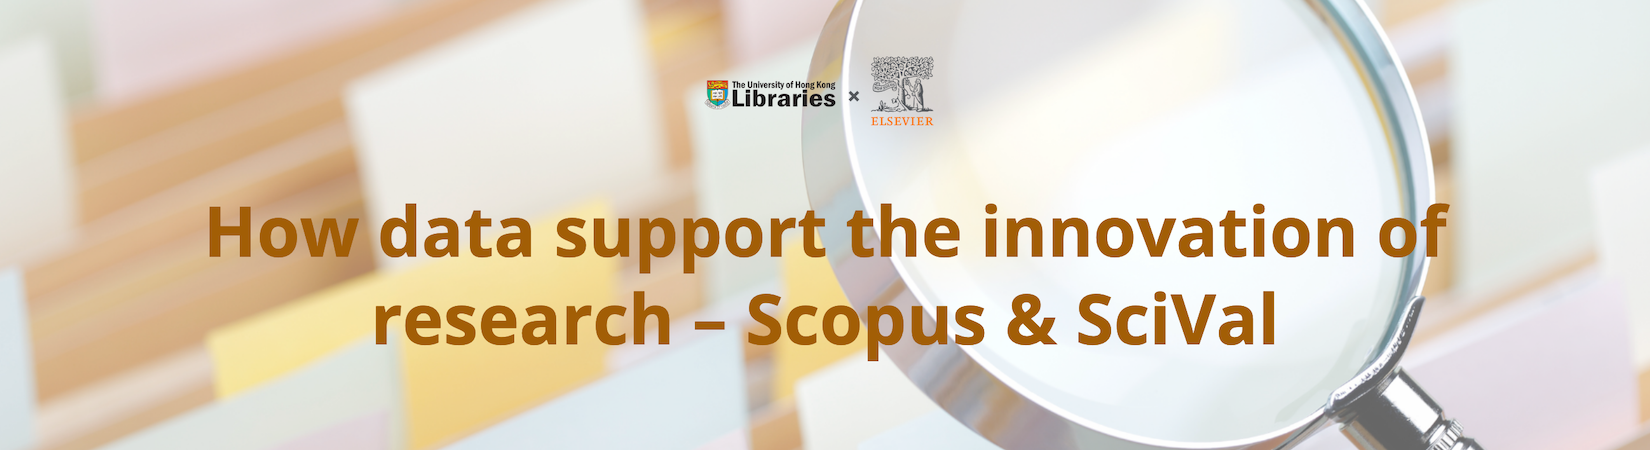 Scopus & SciVal event banner